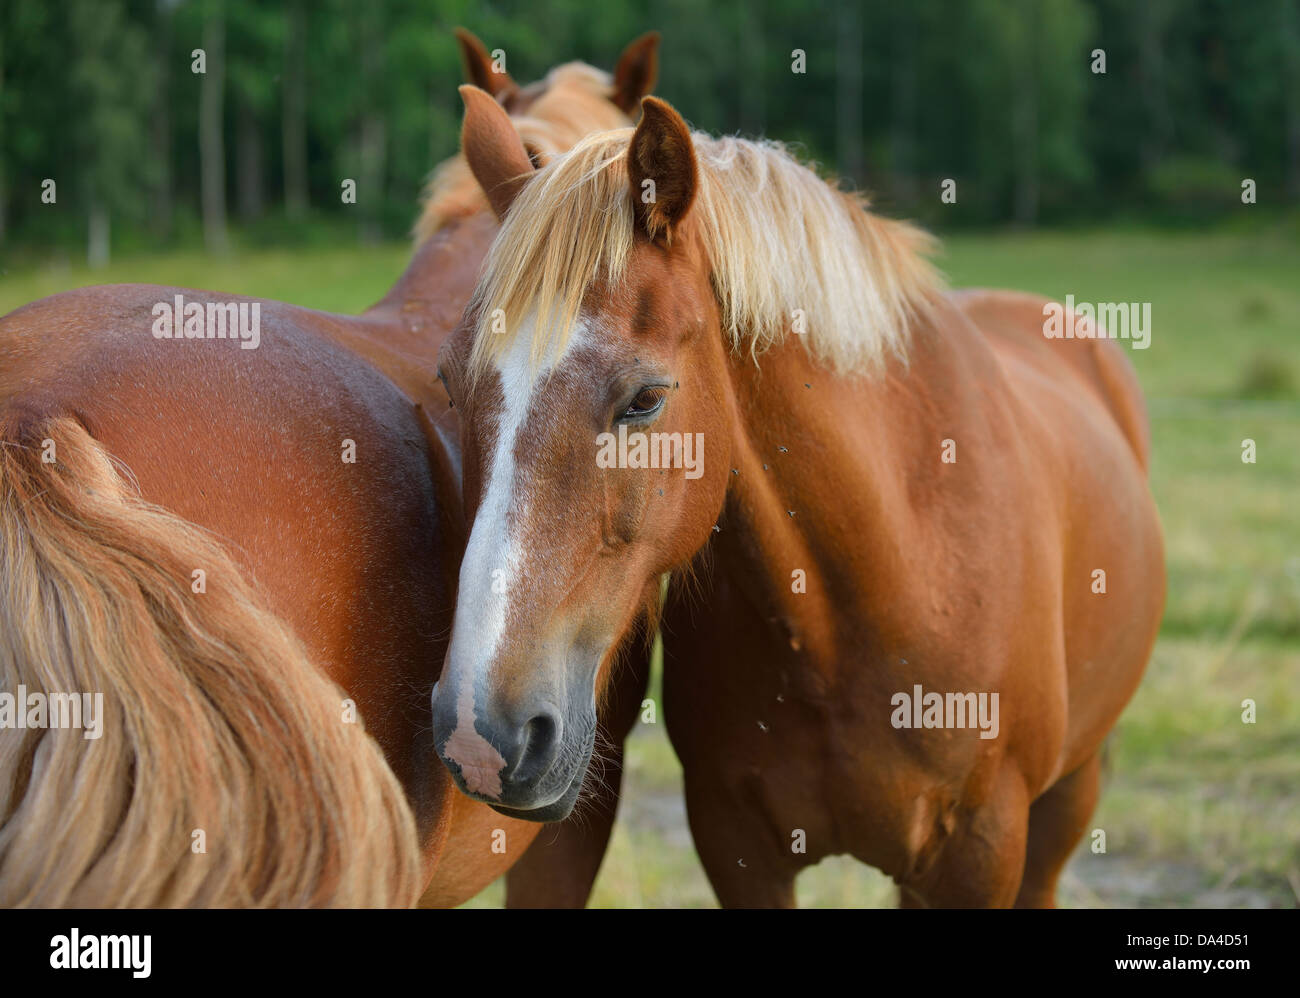 Domestic horses (Equus ferus caballus), Munsö, Sweden Stock Photo